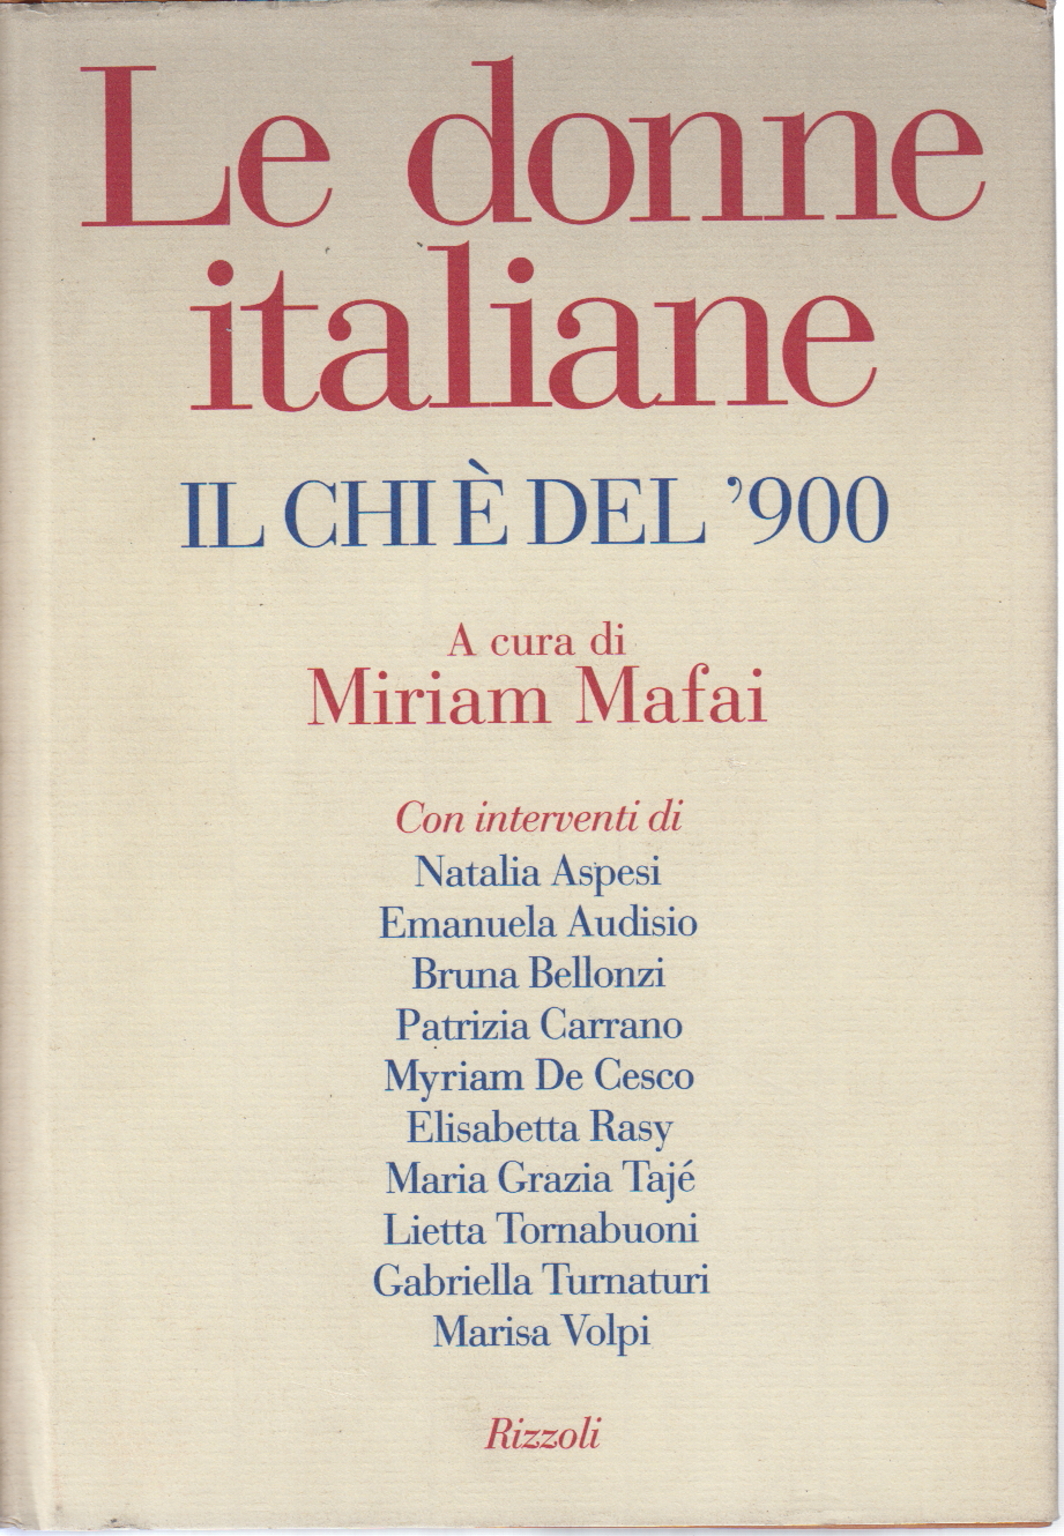 Mujeres italianas, Miriam Mafai